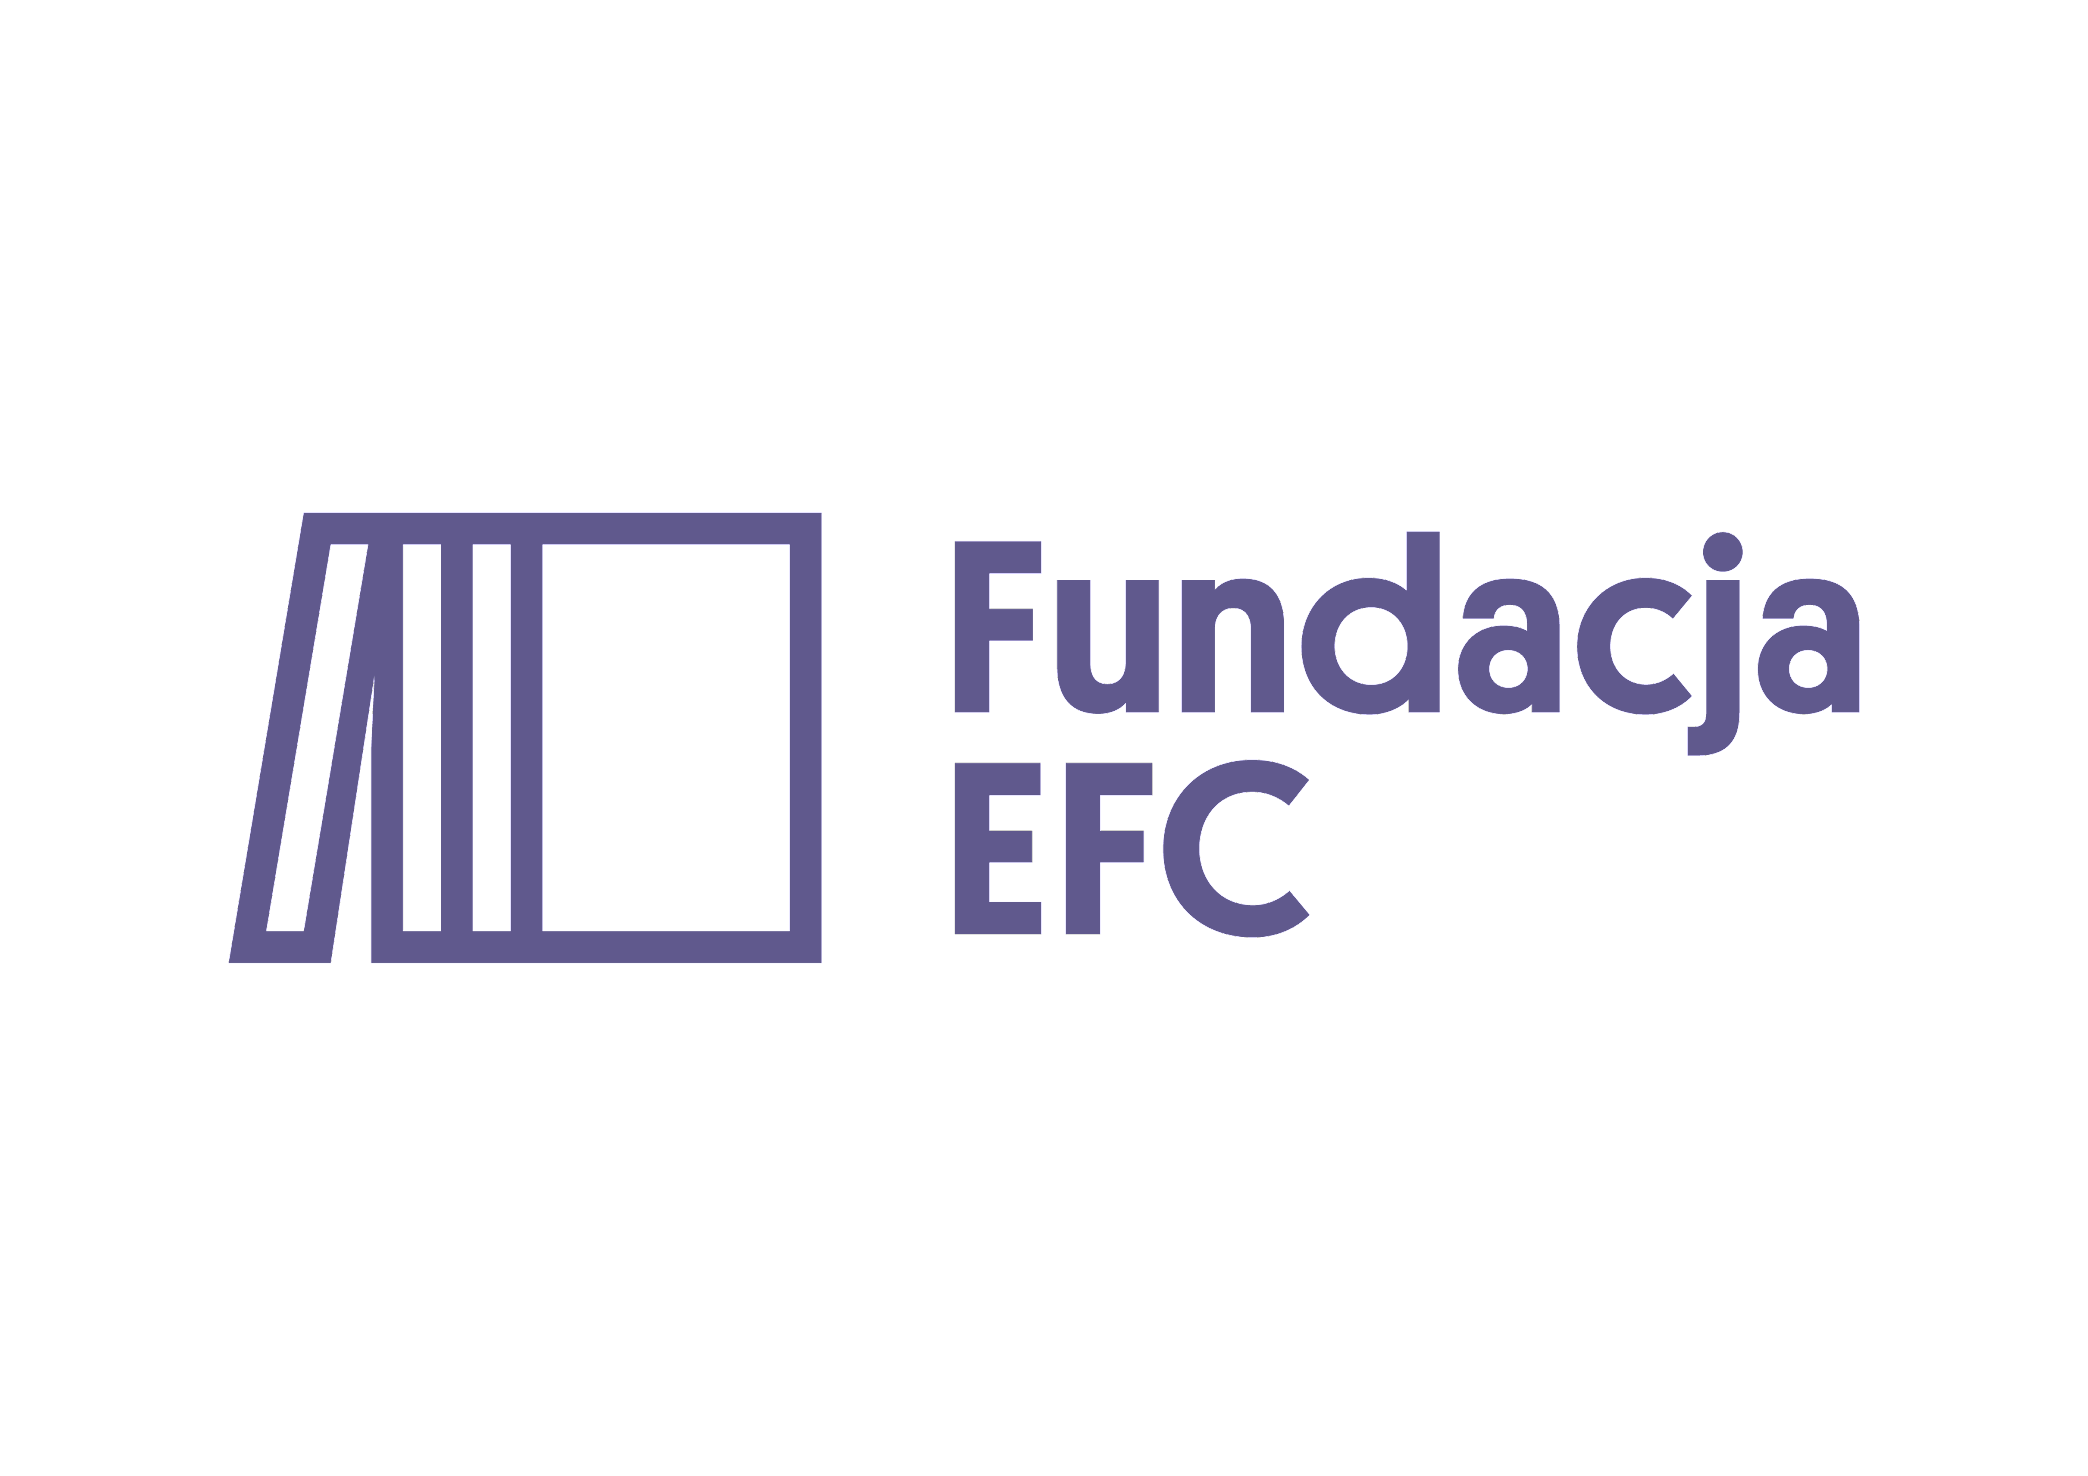 Fundacja EFC